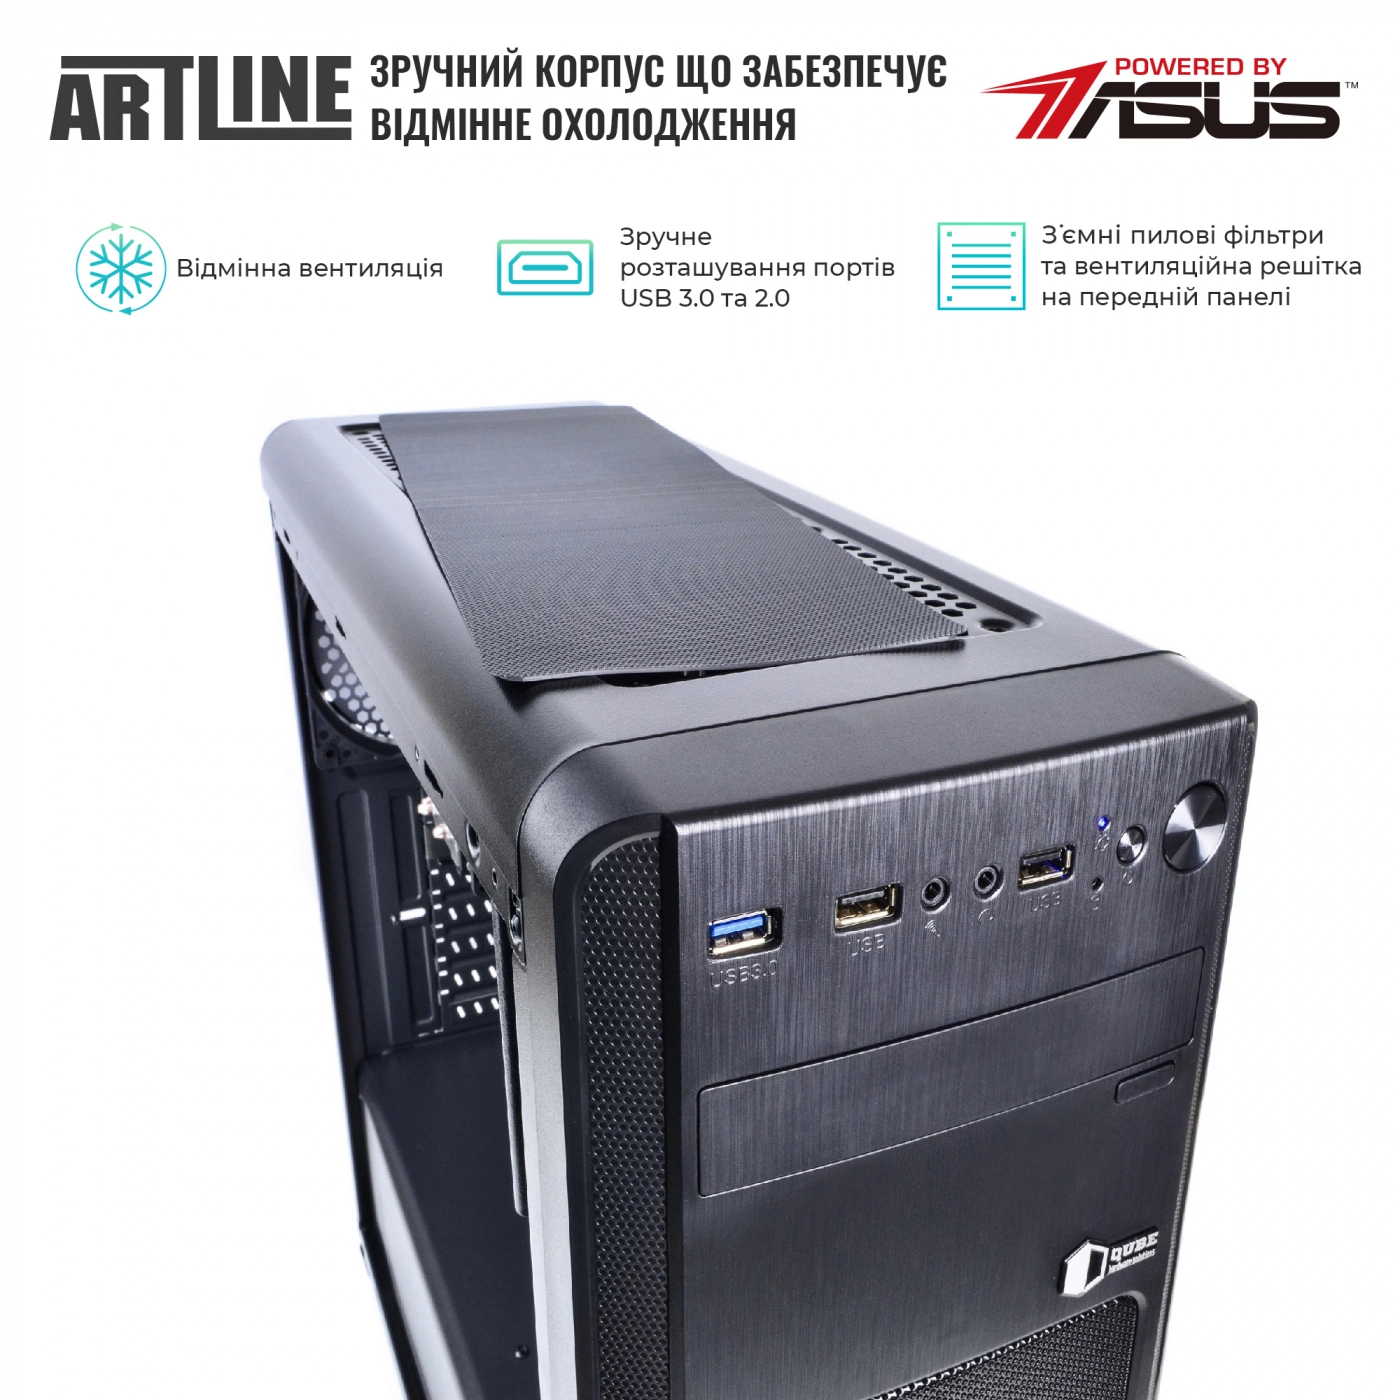 Купить Сервер ARTLINE Business T25v32 - фото 4